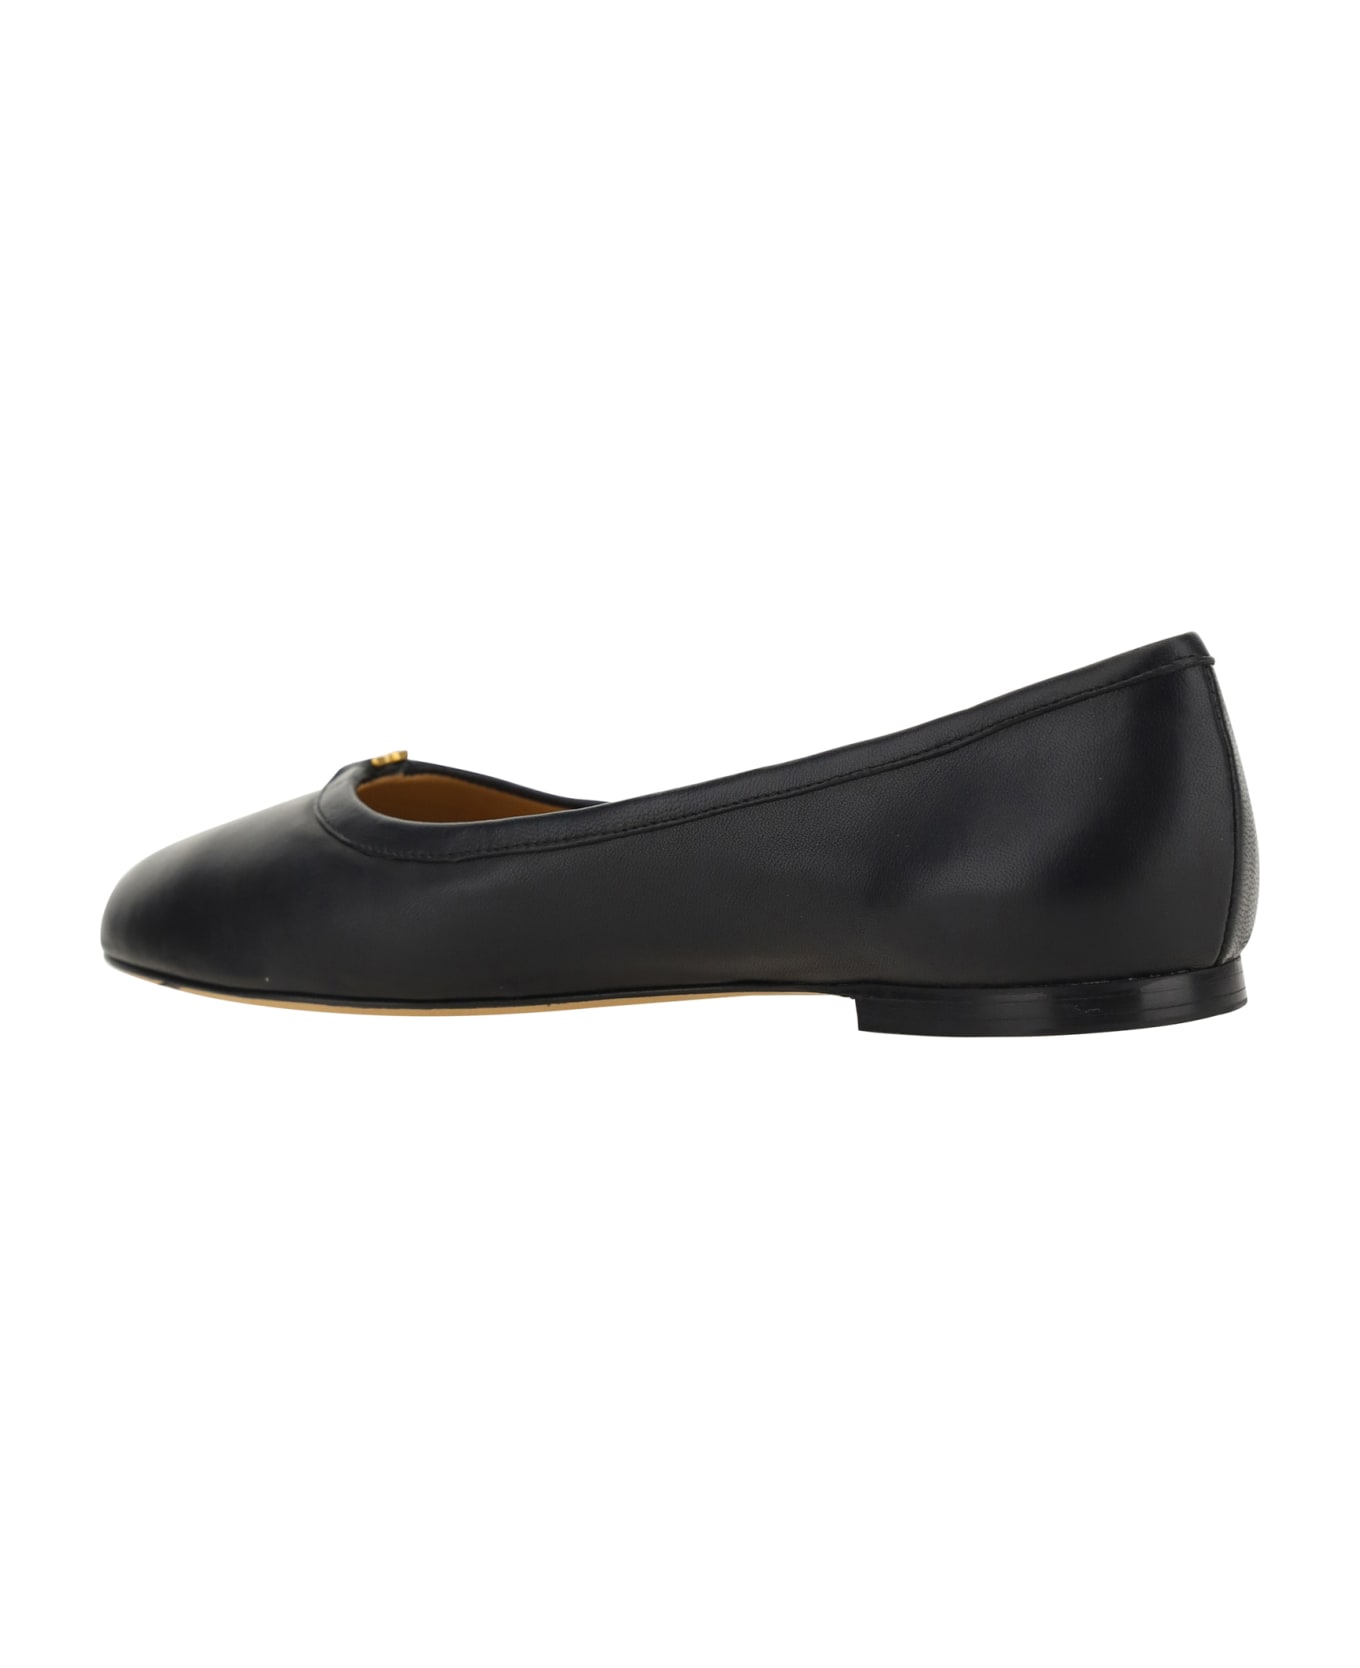 Chloé Marcie Ballet Shoes - Black